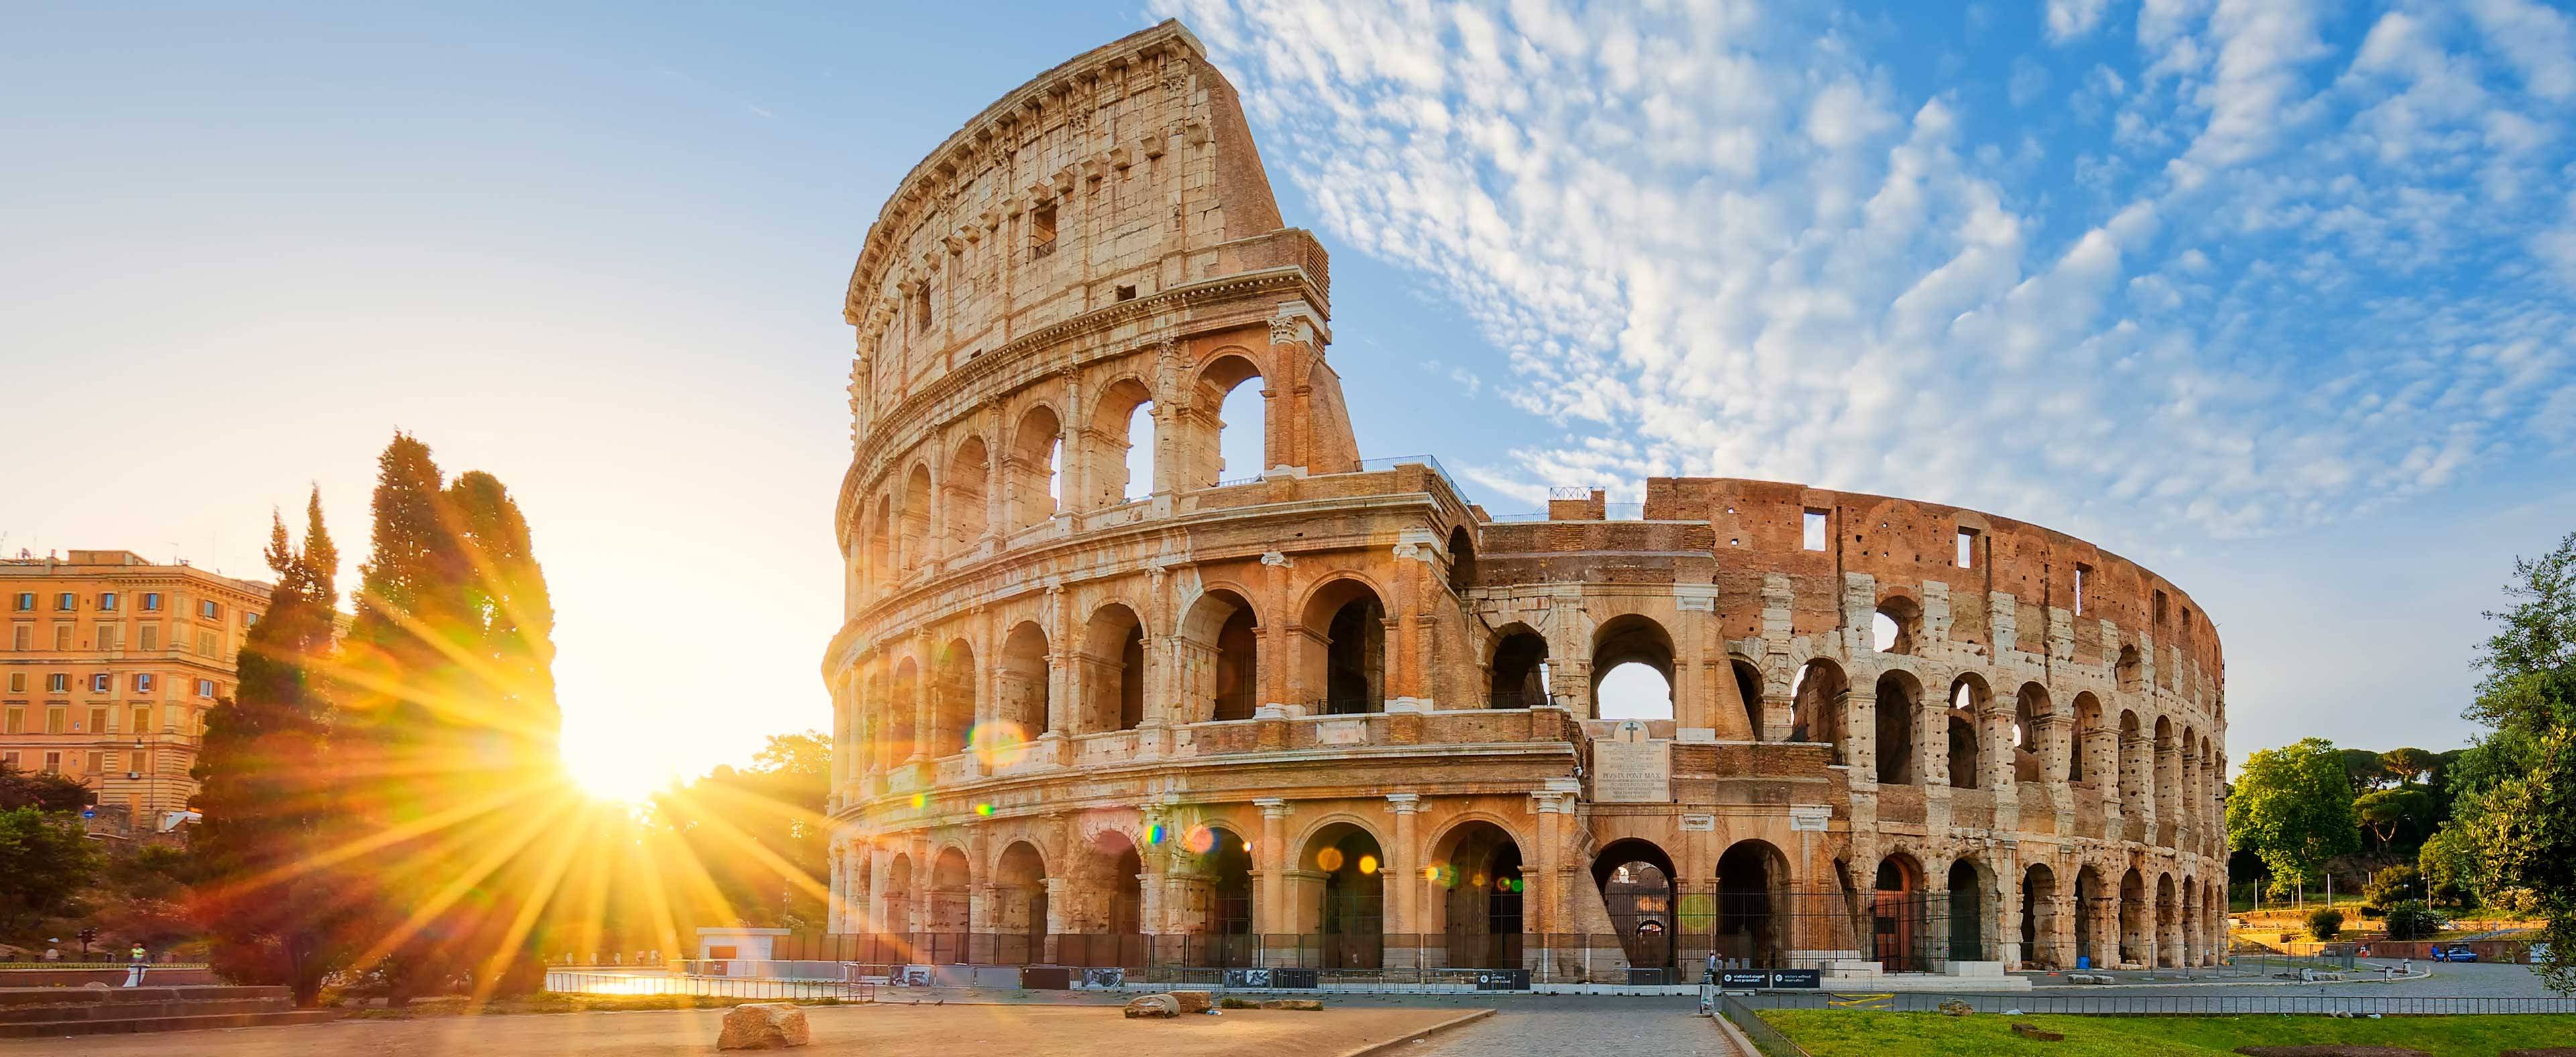 Excursiones Tours En Roma